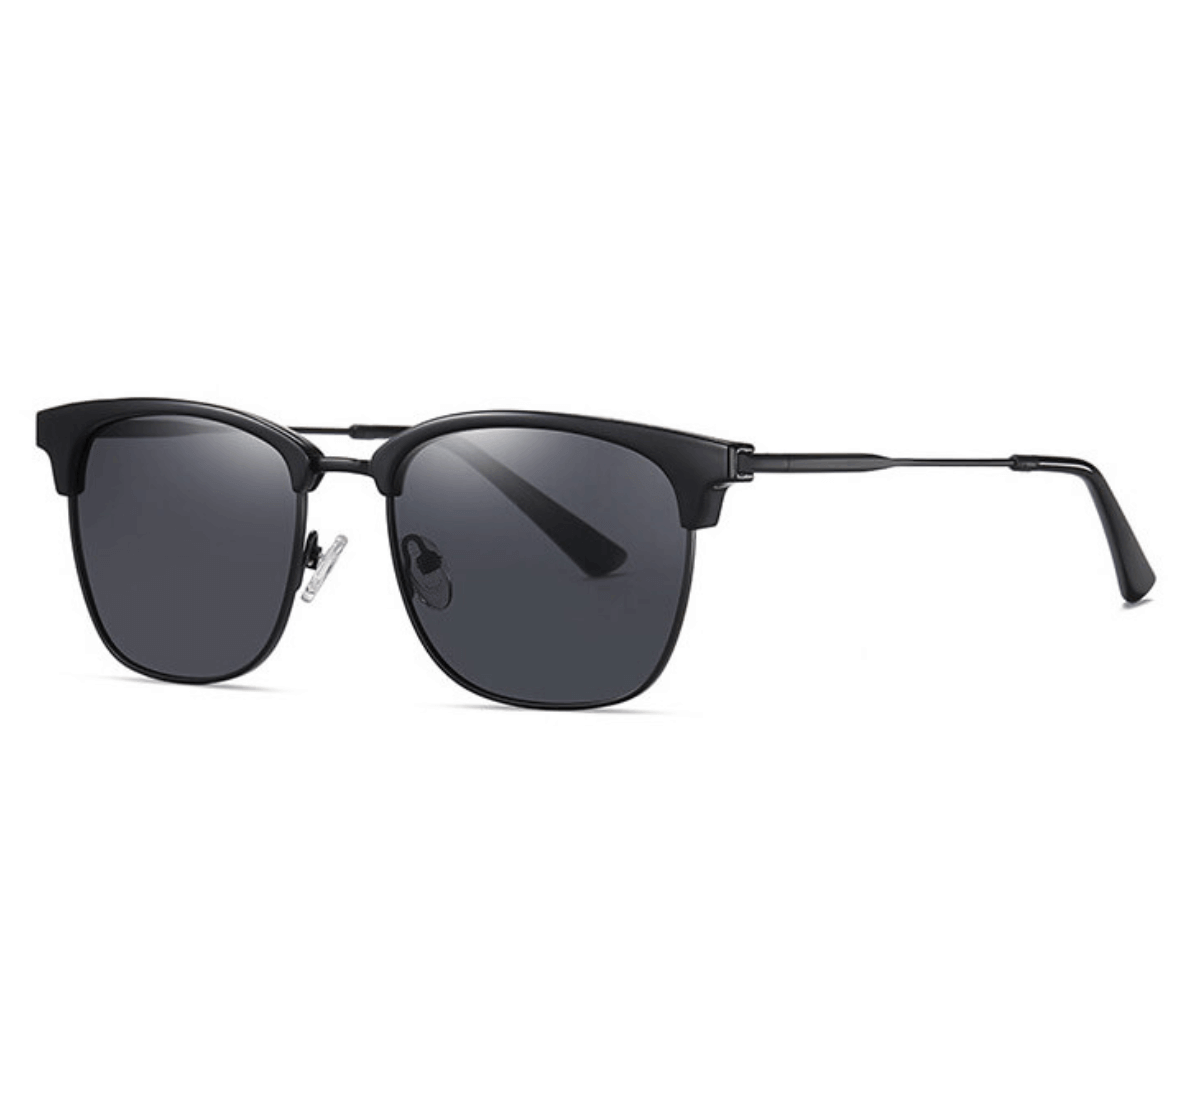 wholesale sunglasses polarized, eyebrow black sunglasses, wholesale polarized sunglasses China, bulk polarized sunglasses, sunglasses factory